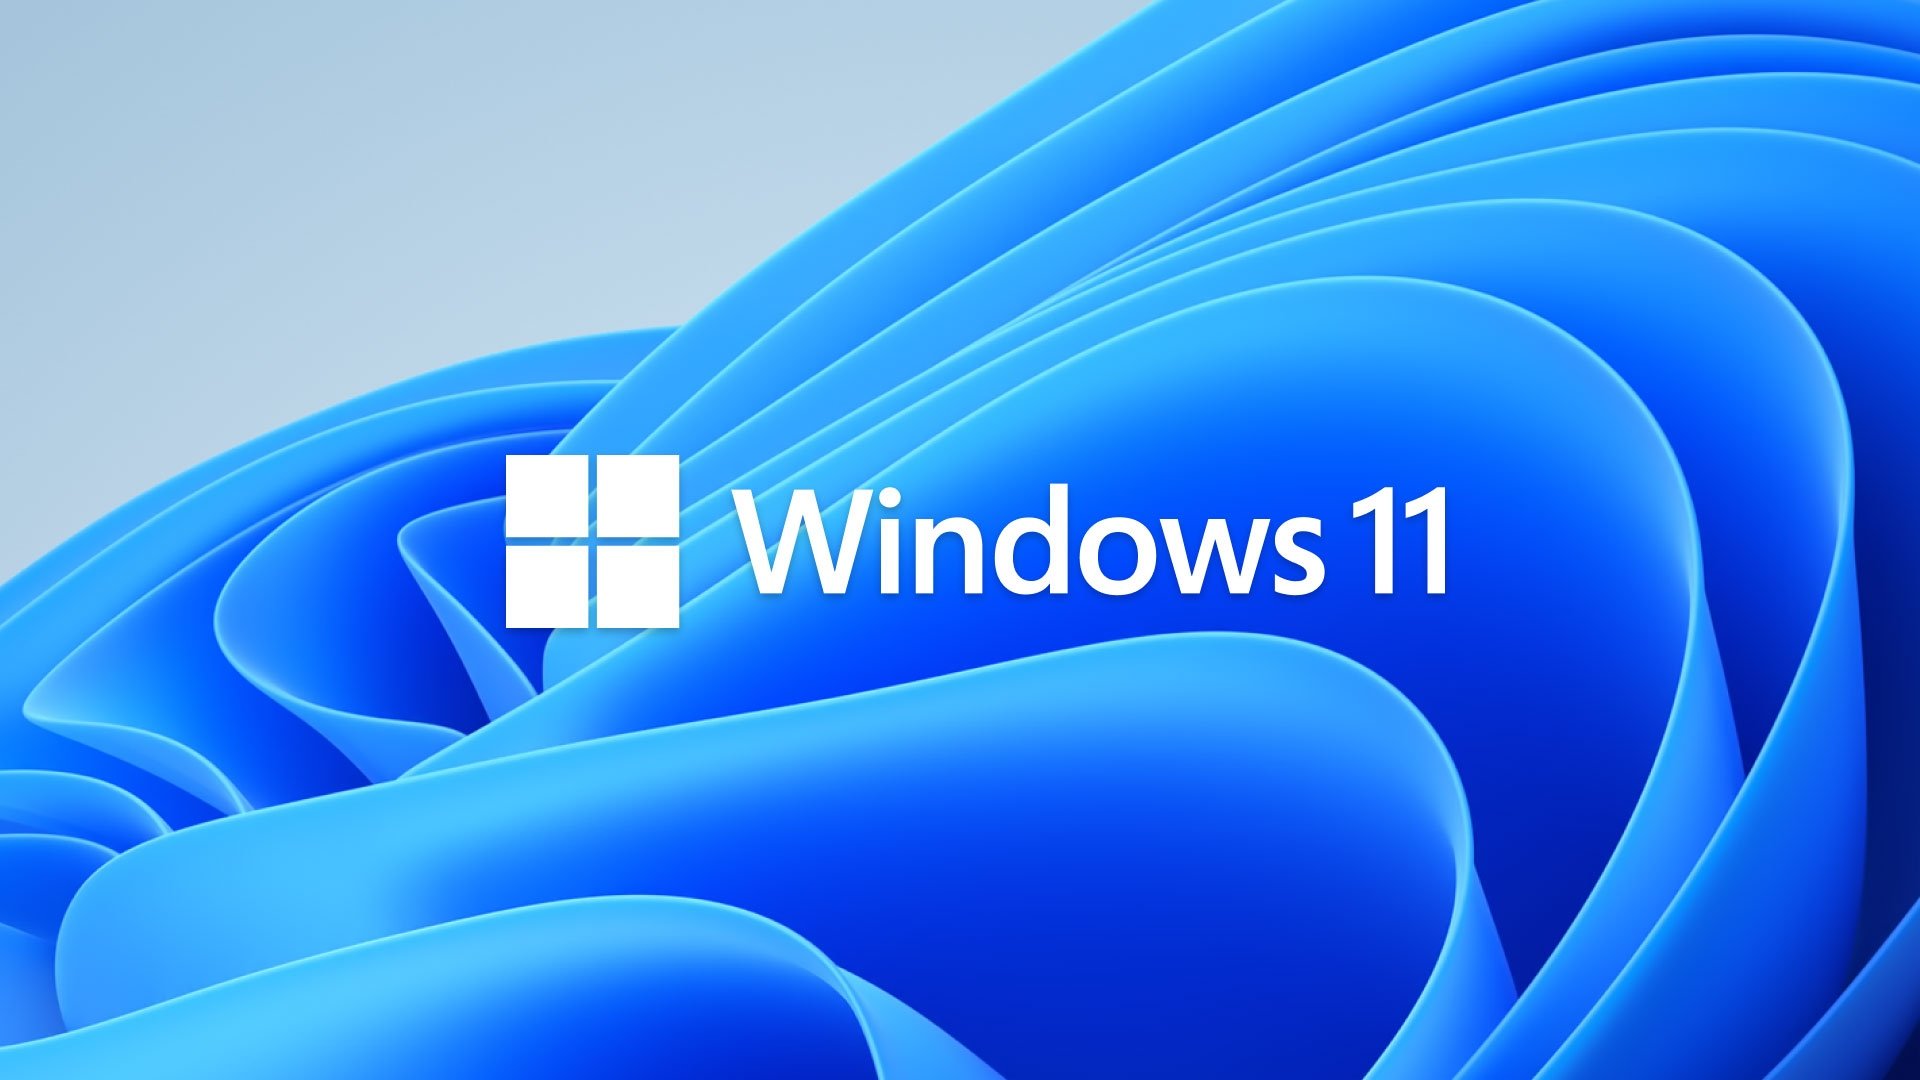 Windows: Neues Bildbearbeitungstool und Wi-Fi 7 Unterstützung